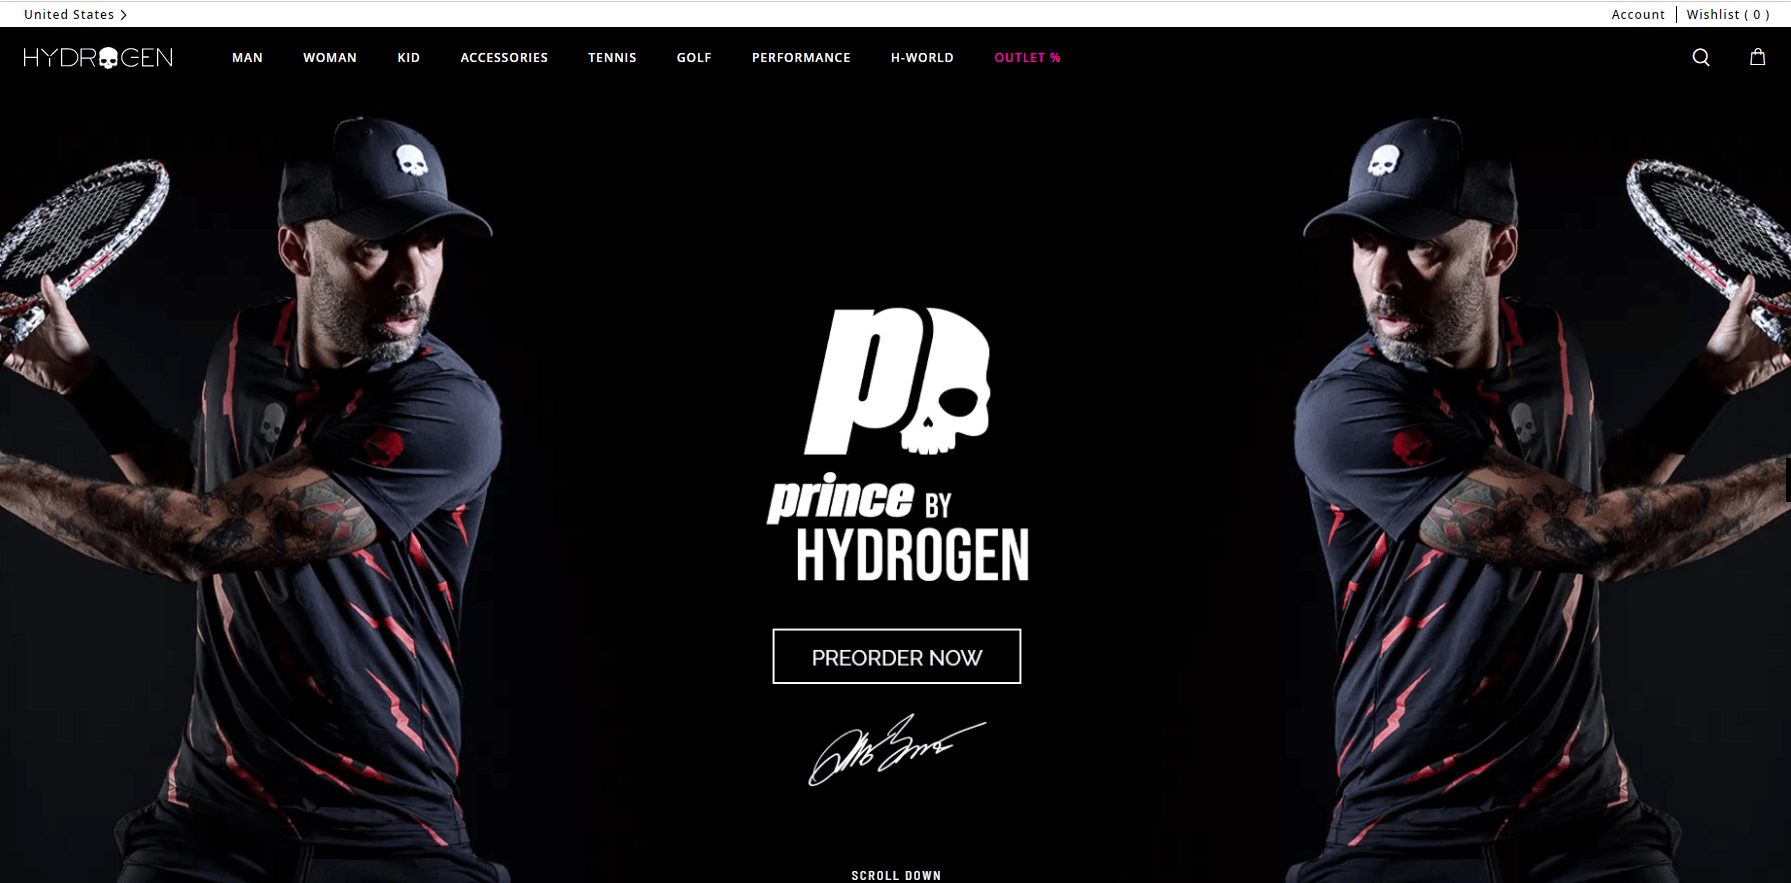 Hydrogen官网-意大利高端运动品牌 hydrogen中国官网